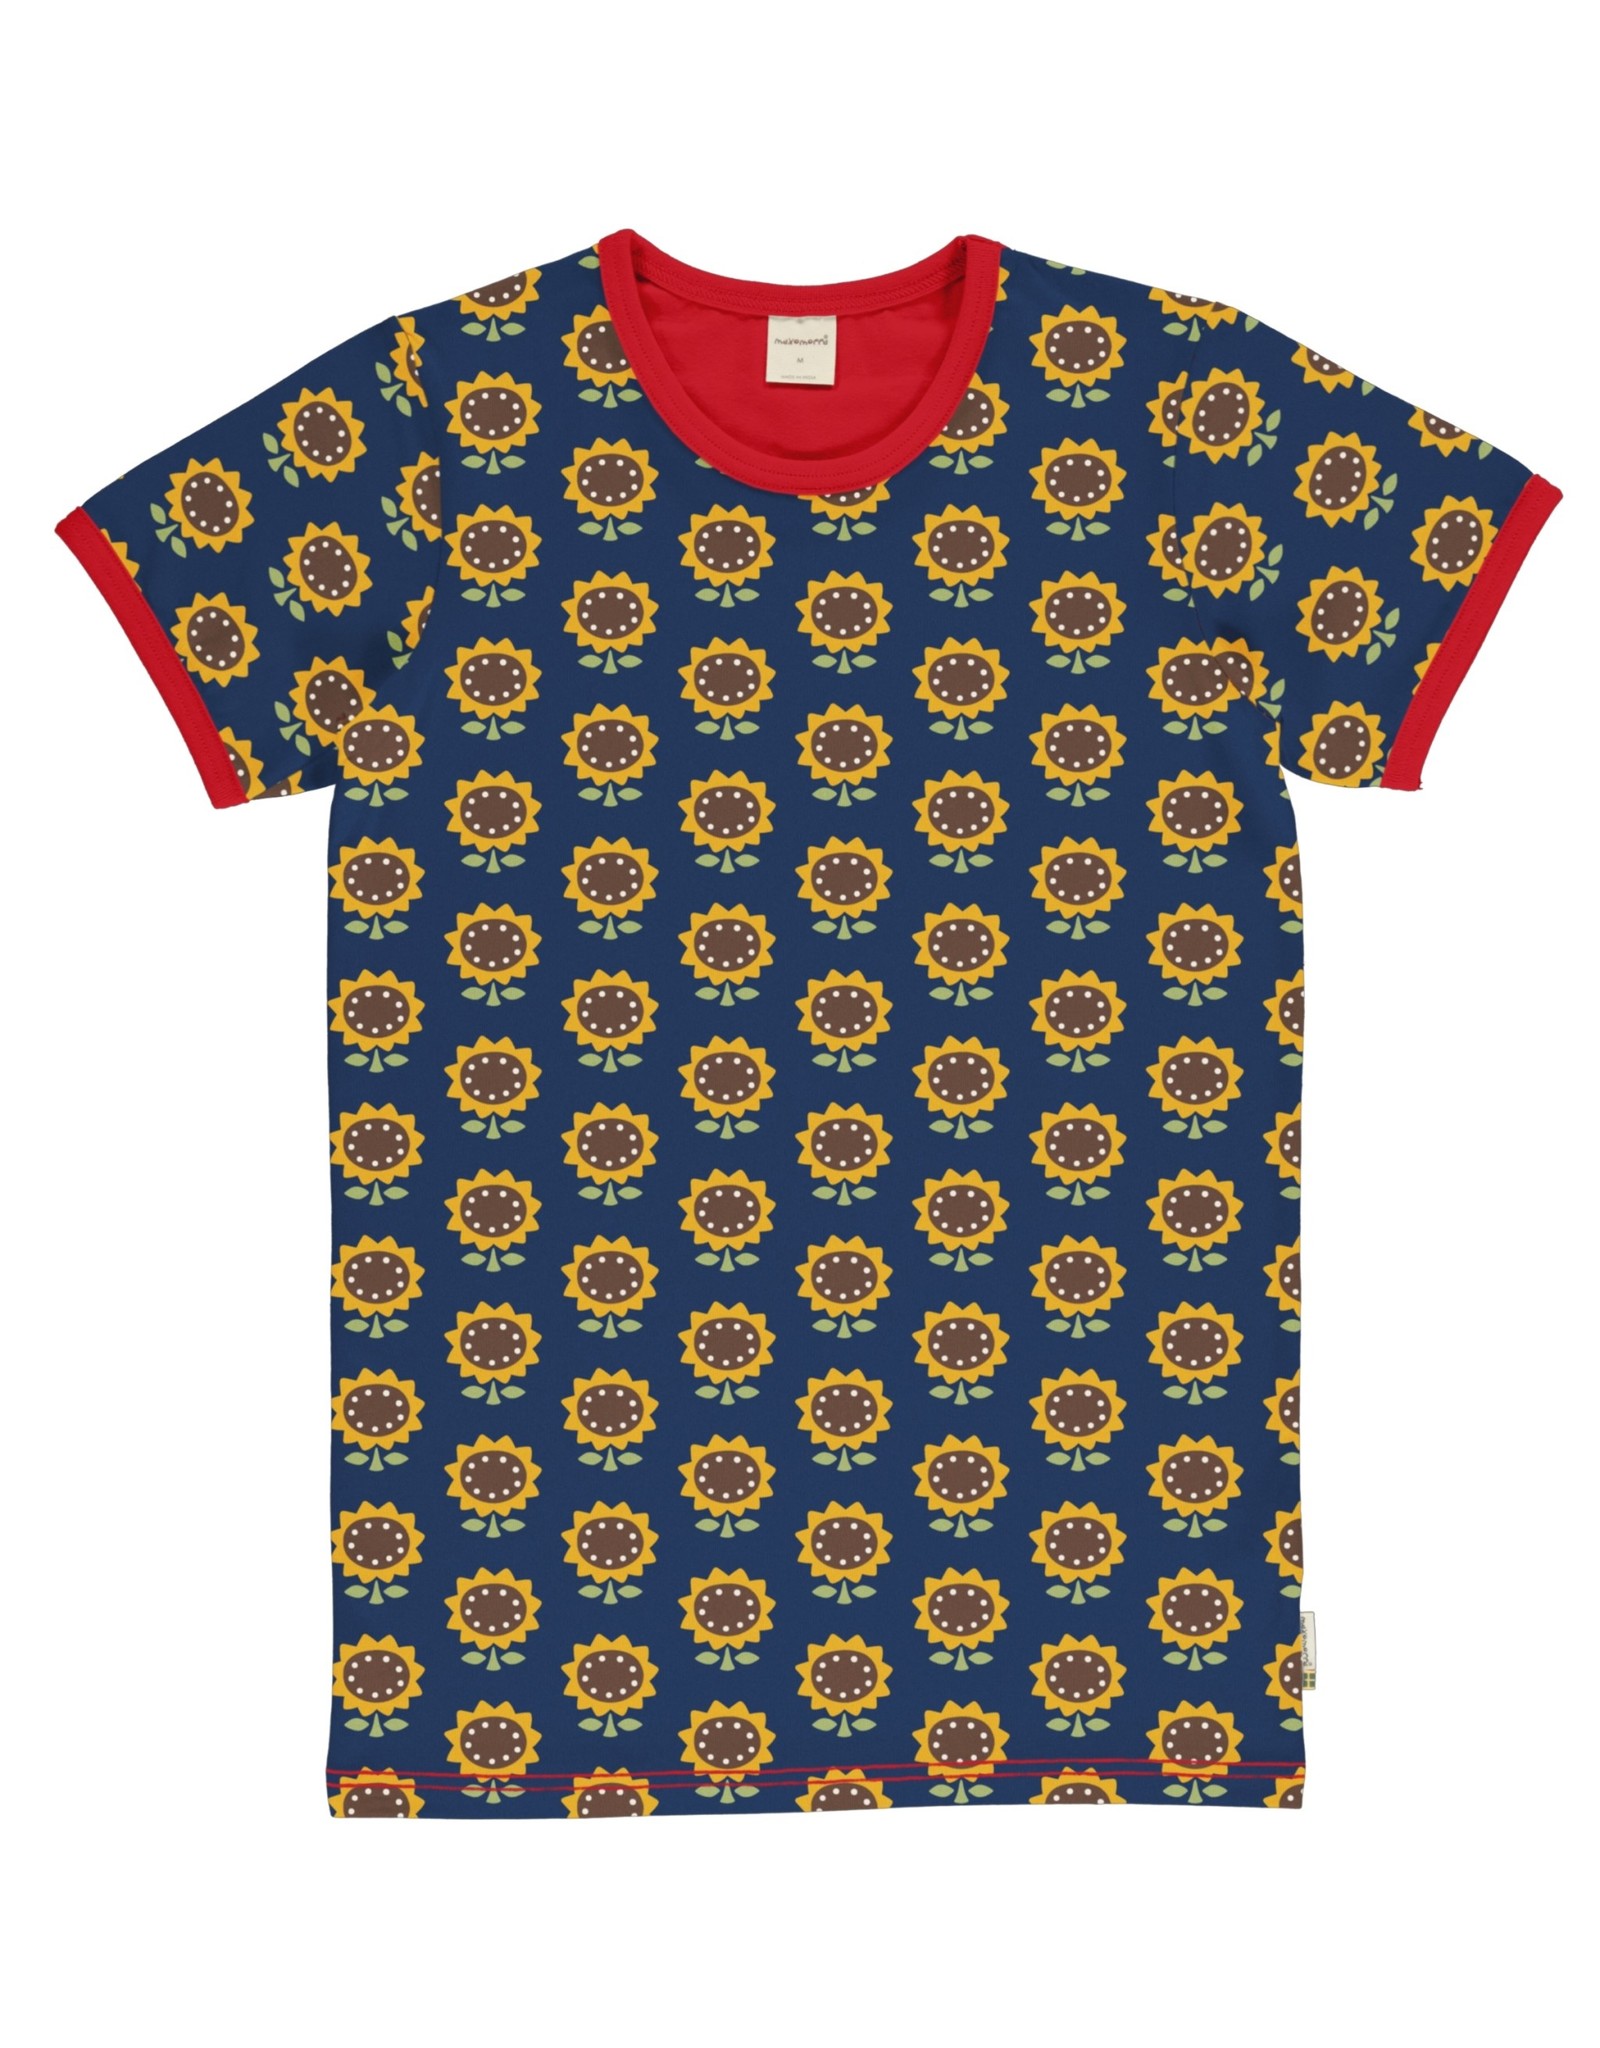 Maxomorra VOLWASSENEN T-shirt met zonnebloemen